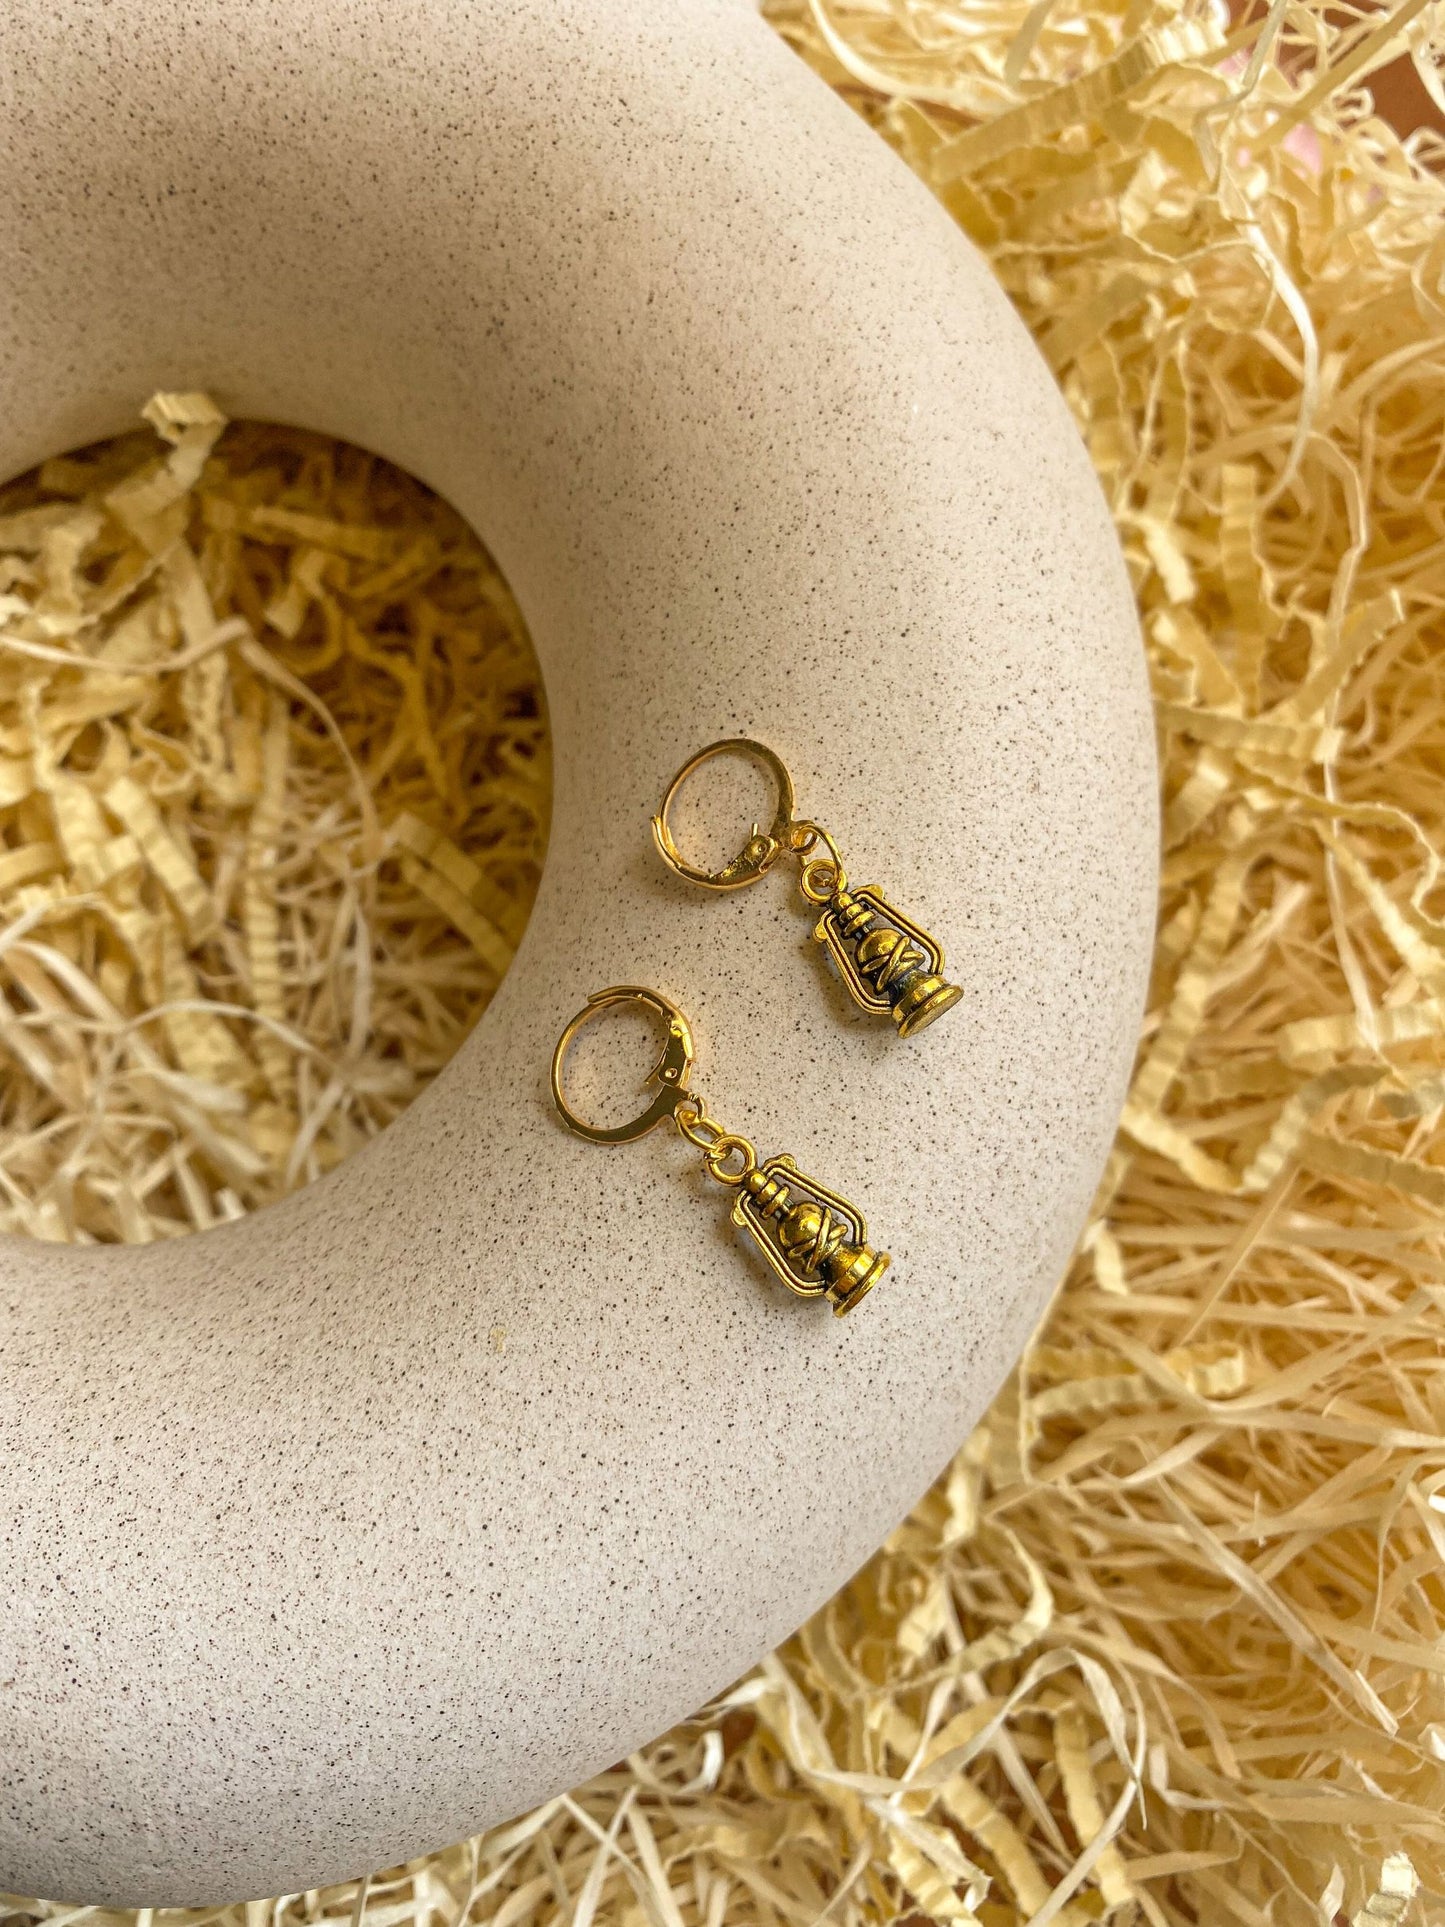 Dainty Lantern Charm Antique Golden Hoop Earrings